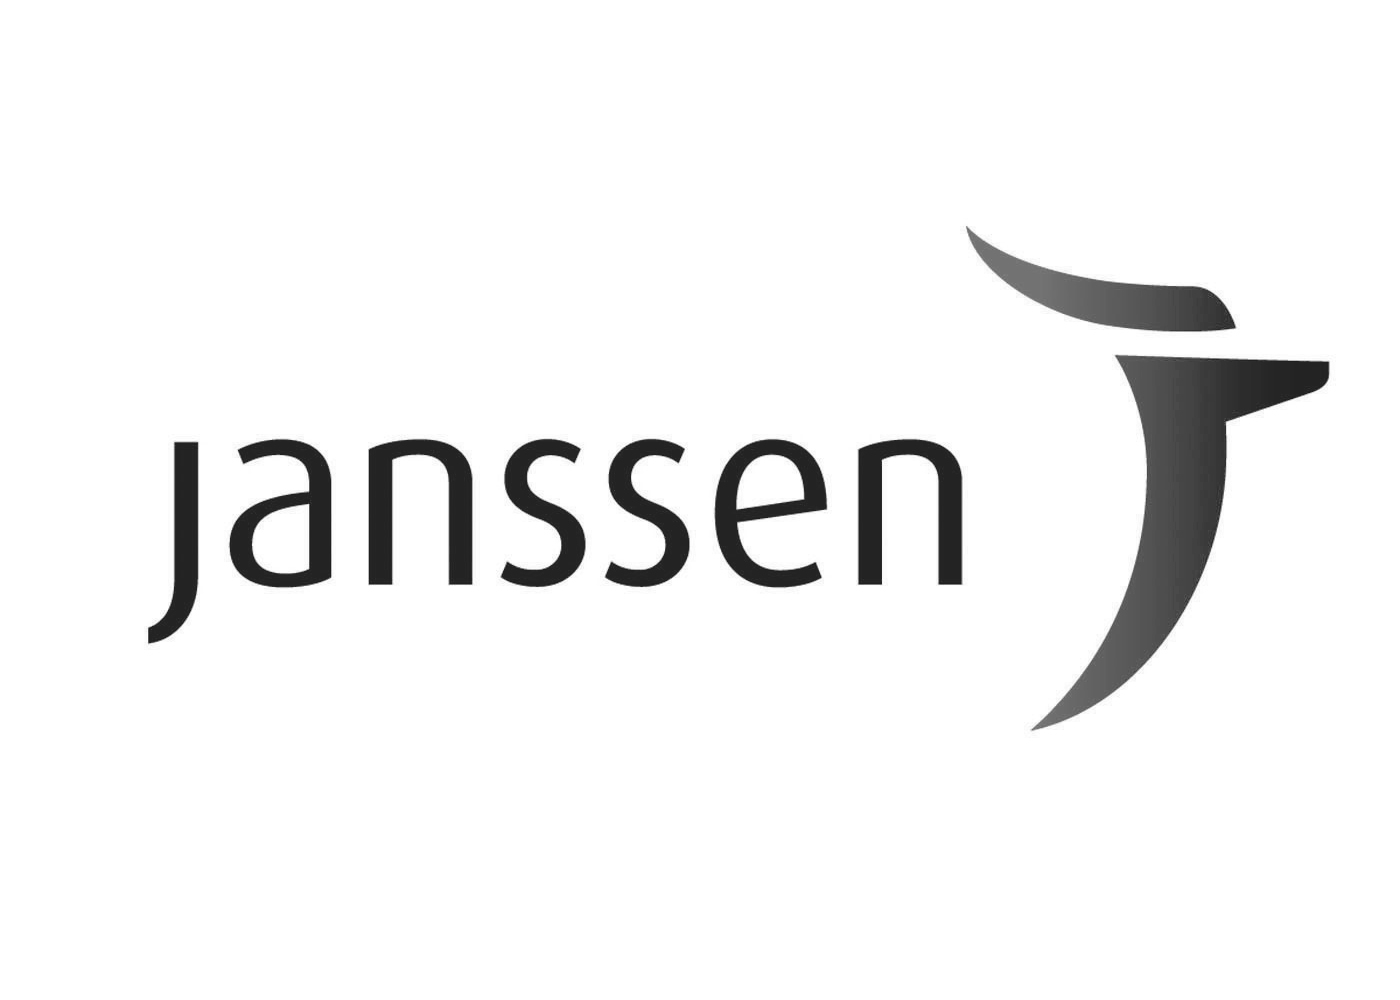 TPAN Janssen Sponsor logo